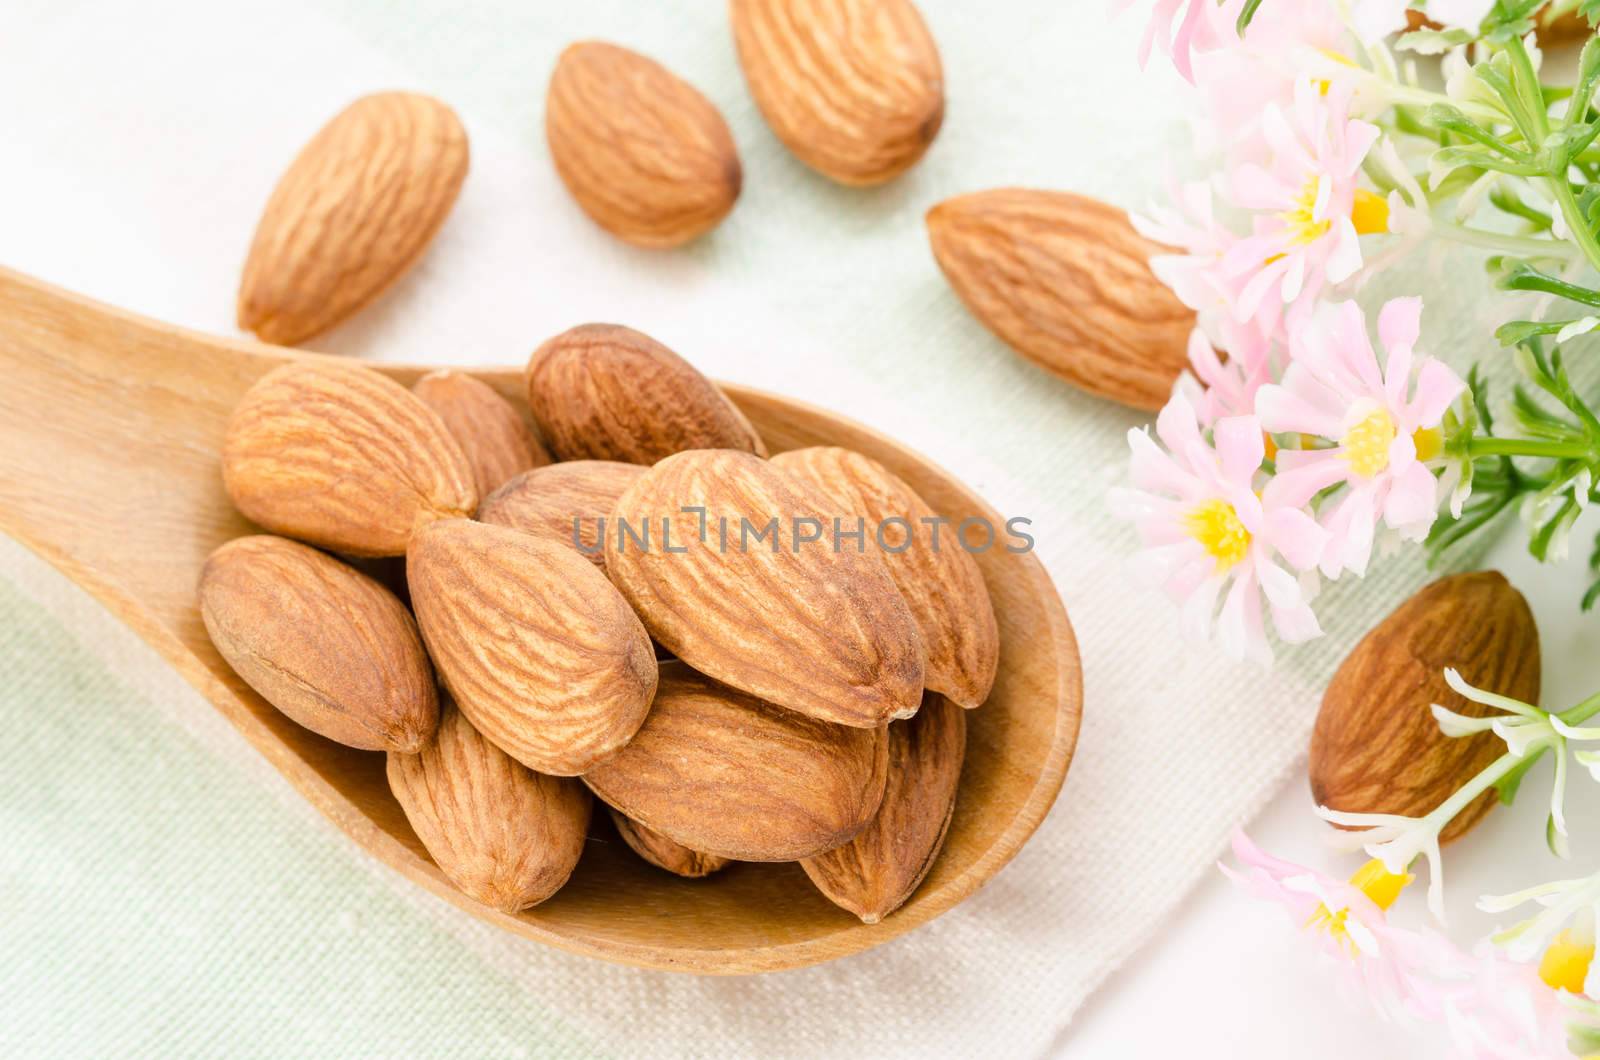 Almonds. by Gamjai